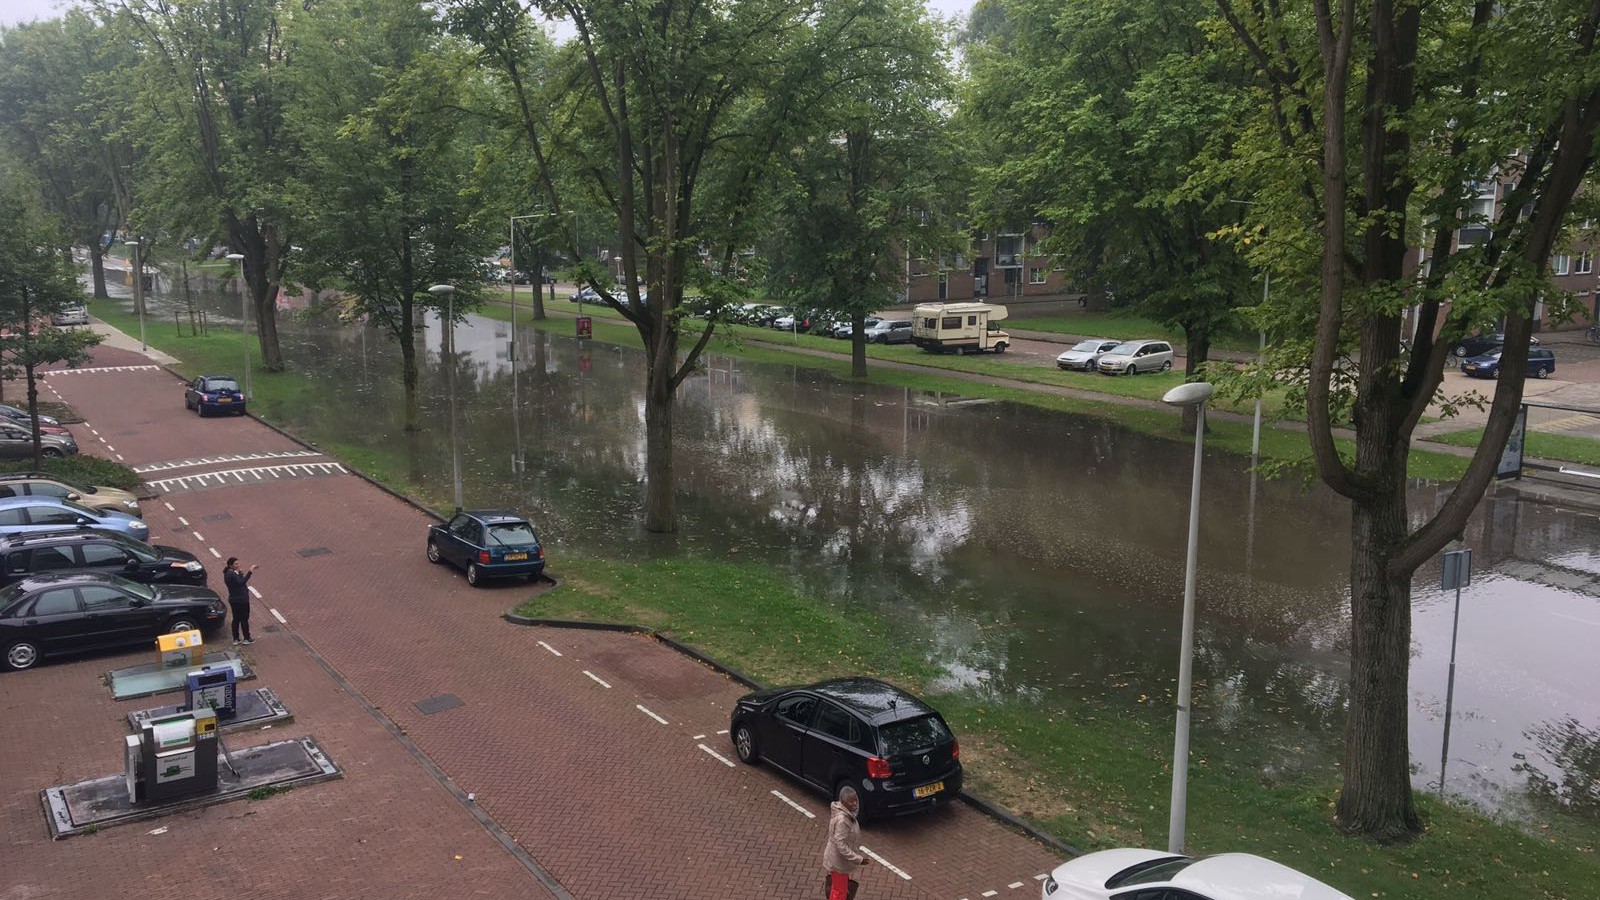 Flinke overstroming op IJdoornlaan in Noord